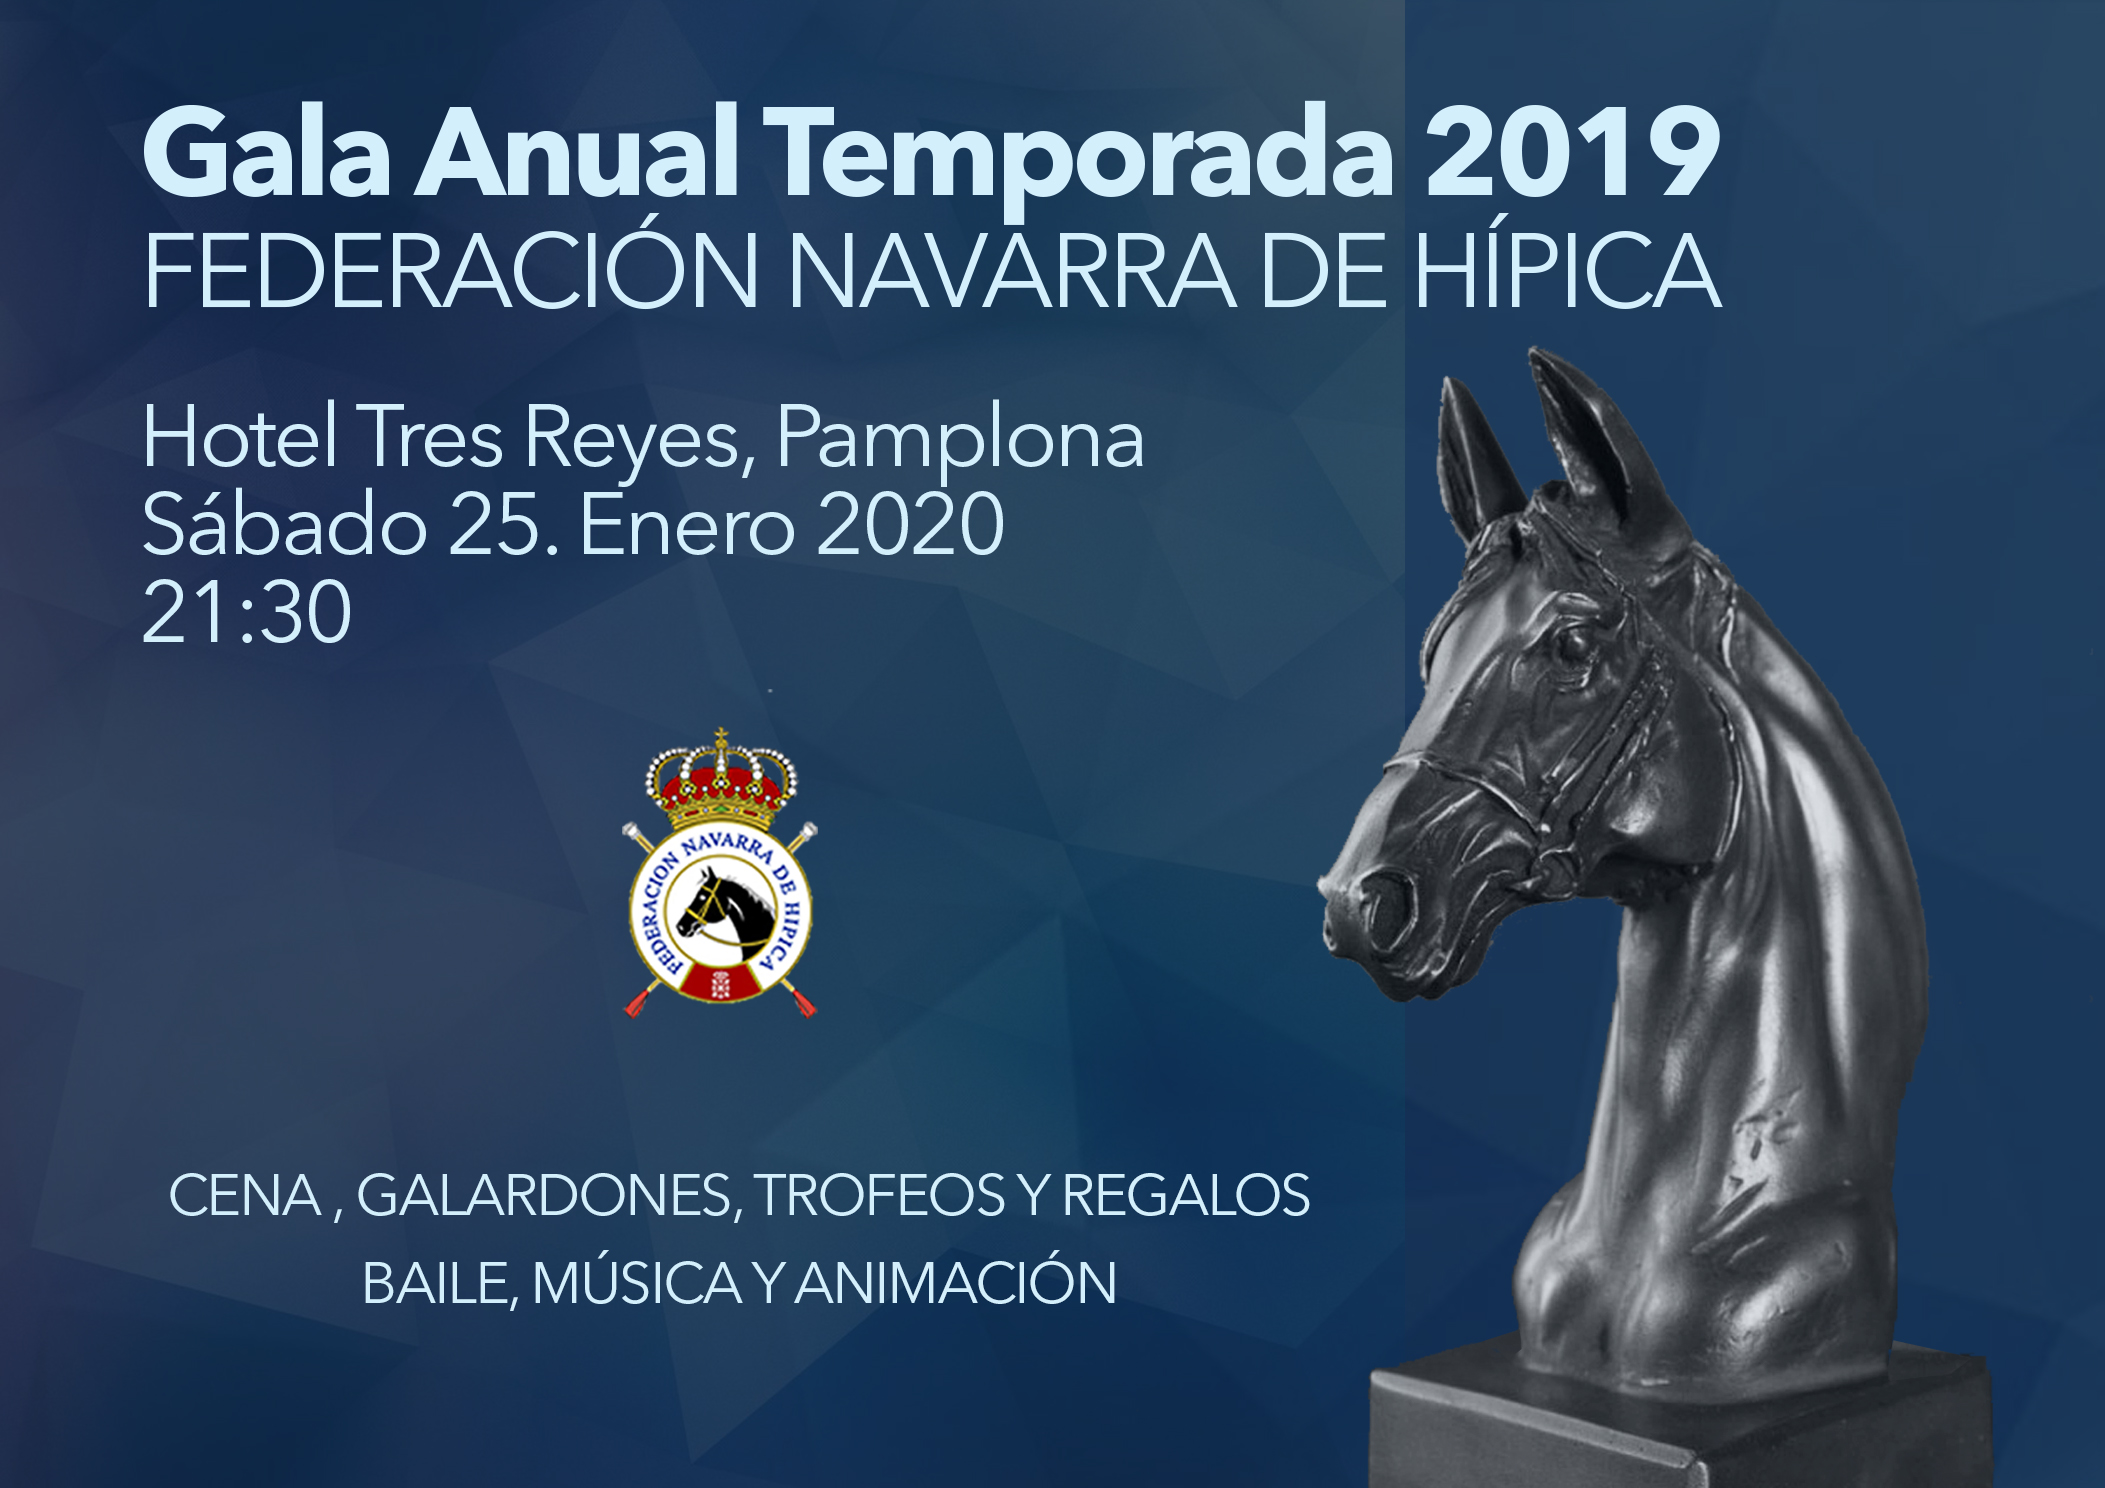 Gala Federacion Navarra de Hípica el 25 de enero en el Hotel Tres Reyes